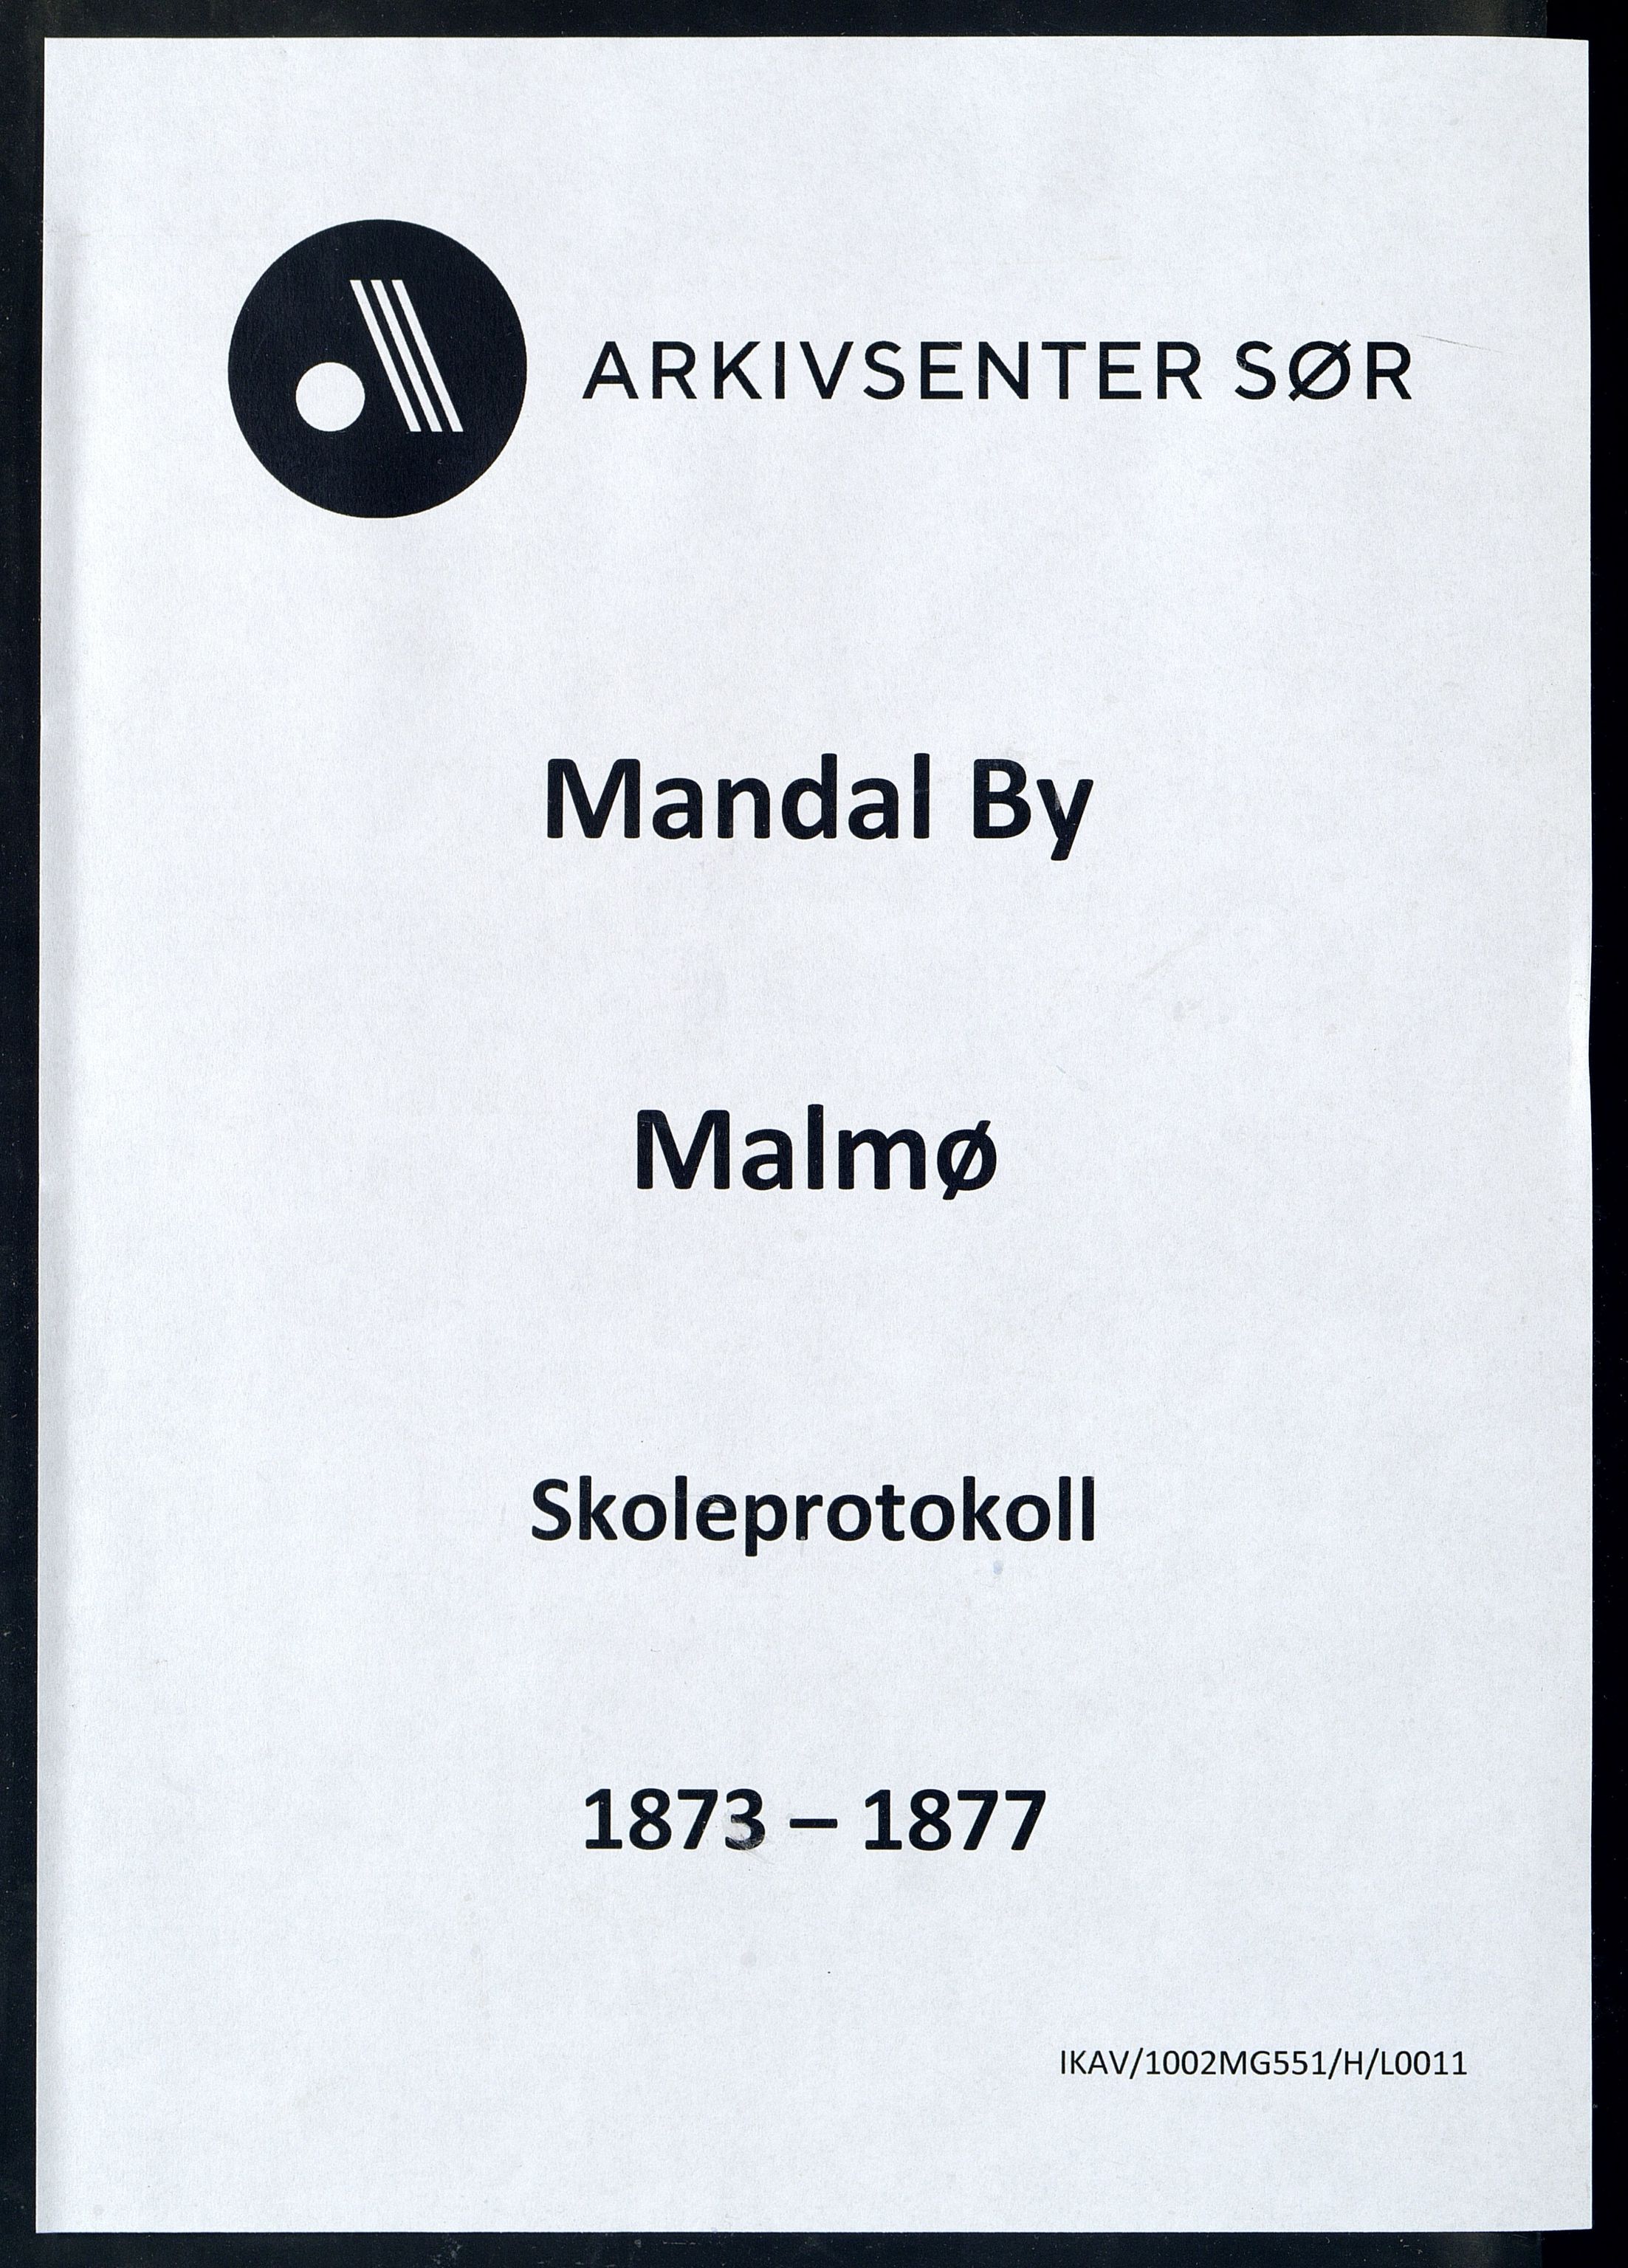 Mandal By - Mandal Allmueskole/Folkeskole/Skole, IKAV/1002MG551/H/L0011: Skoleprotokoll, 1873-1877